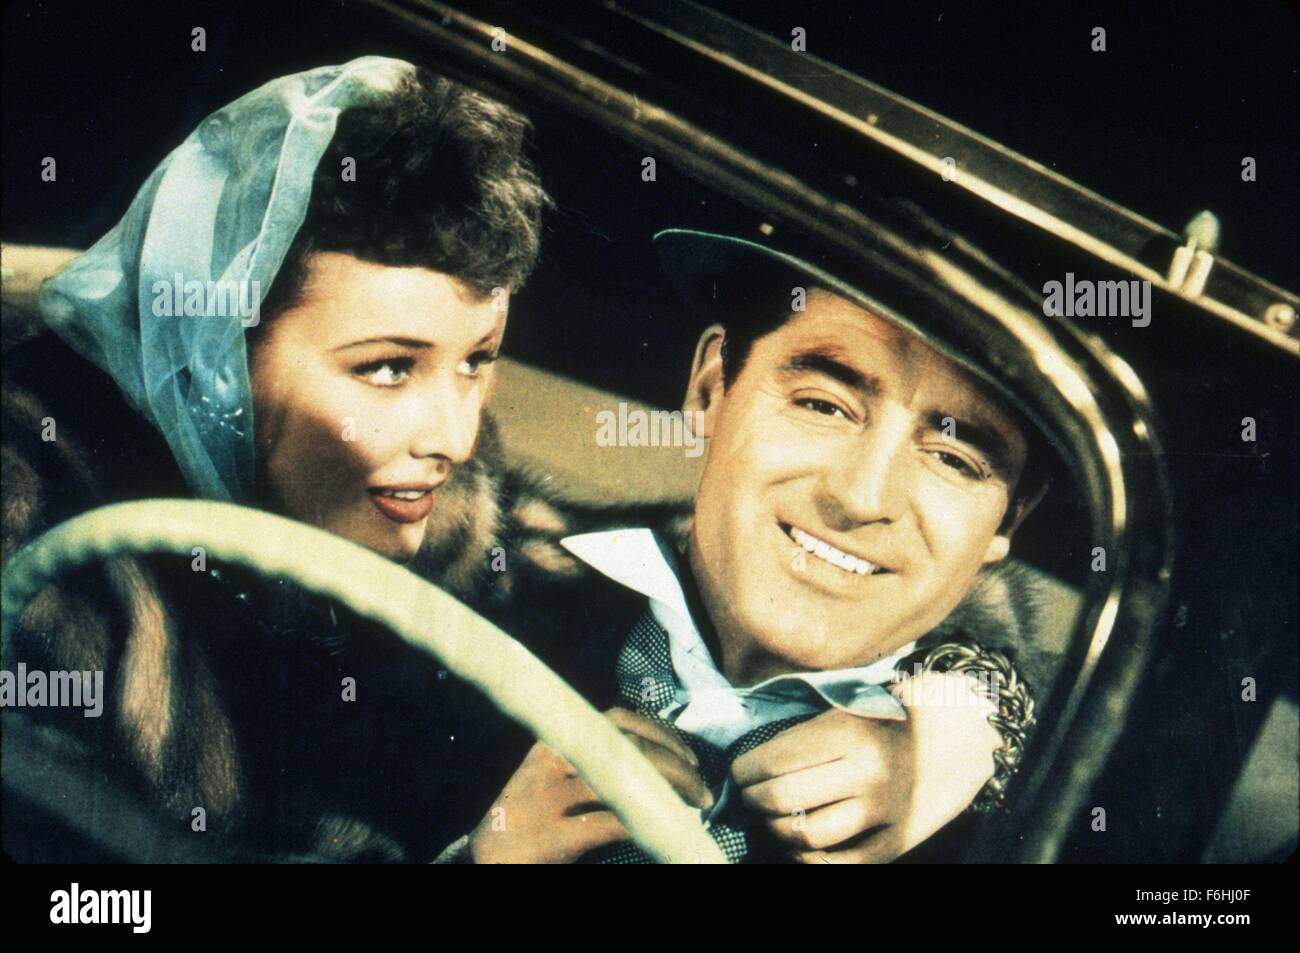 1943, le titre du film : Monsieur LUCKY, Directeur : H C POTTER, Studio : RKO, Photo : LARAINE DAY, Cary Grant. (Crédit Image : SNAP) Banque D'Images